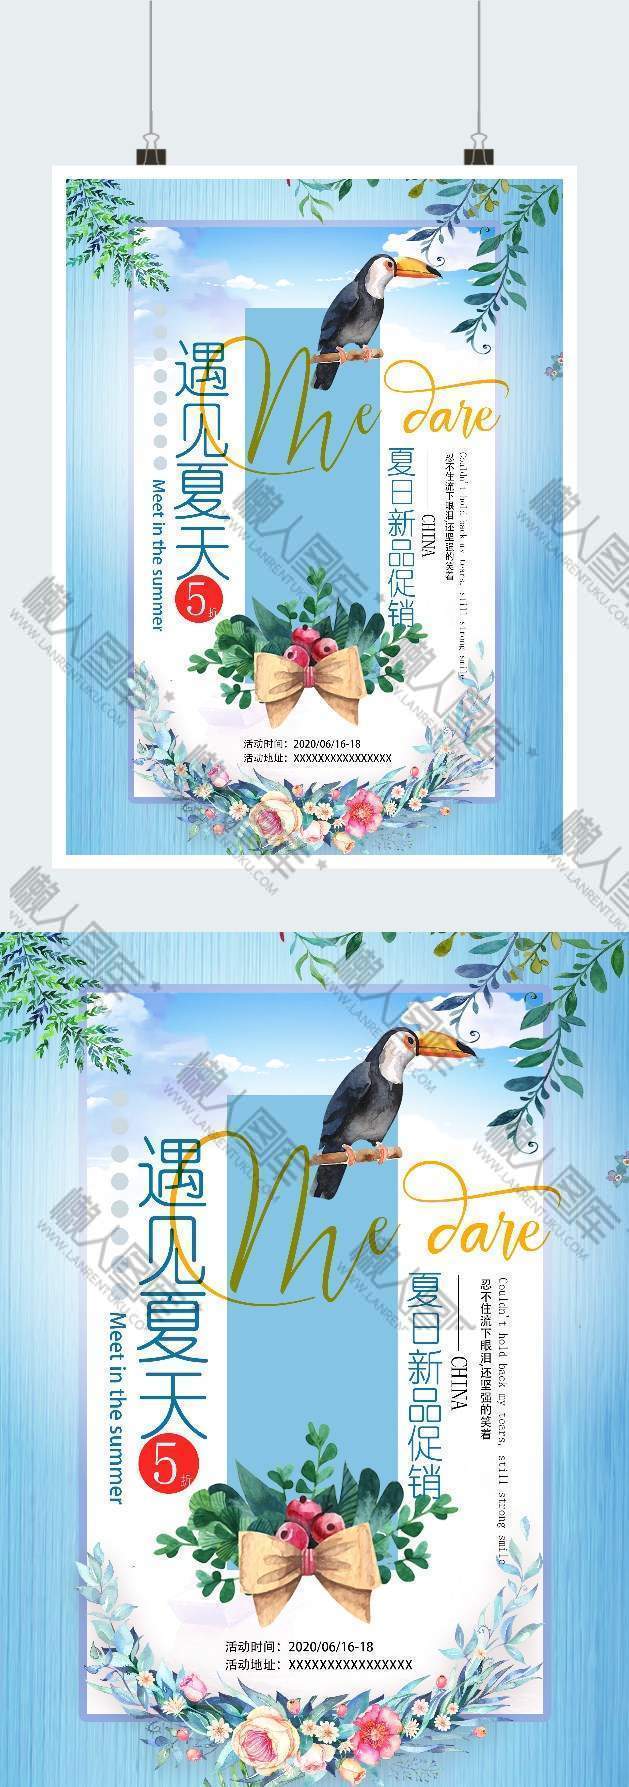 清新夏季促销广告平面海报